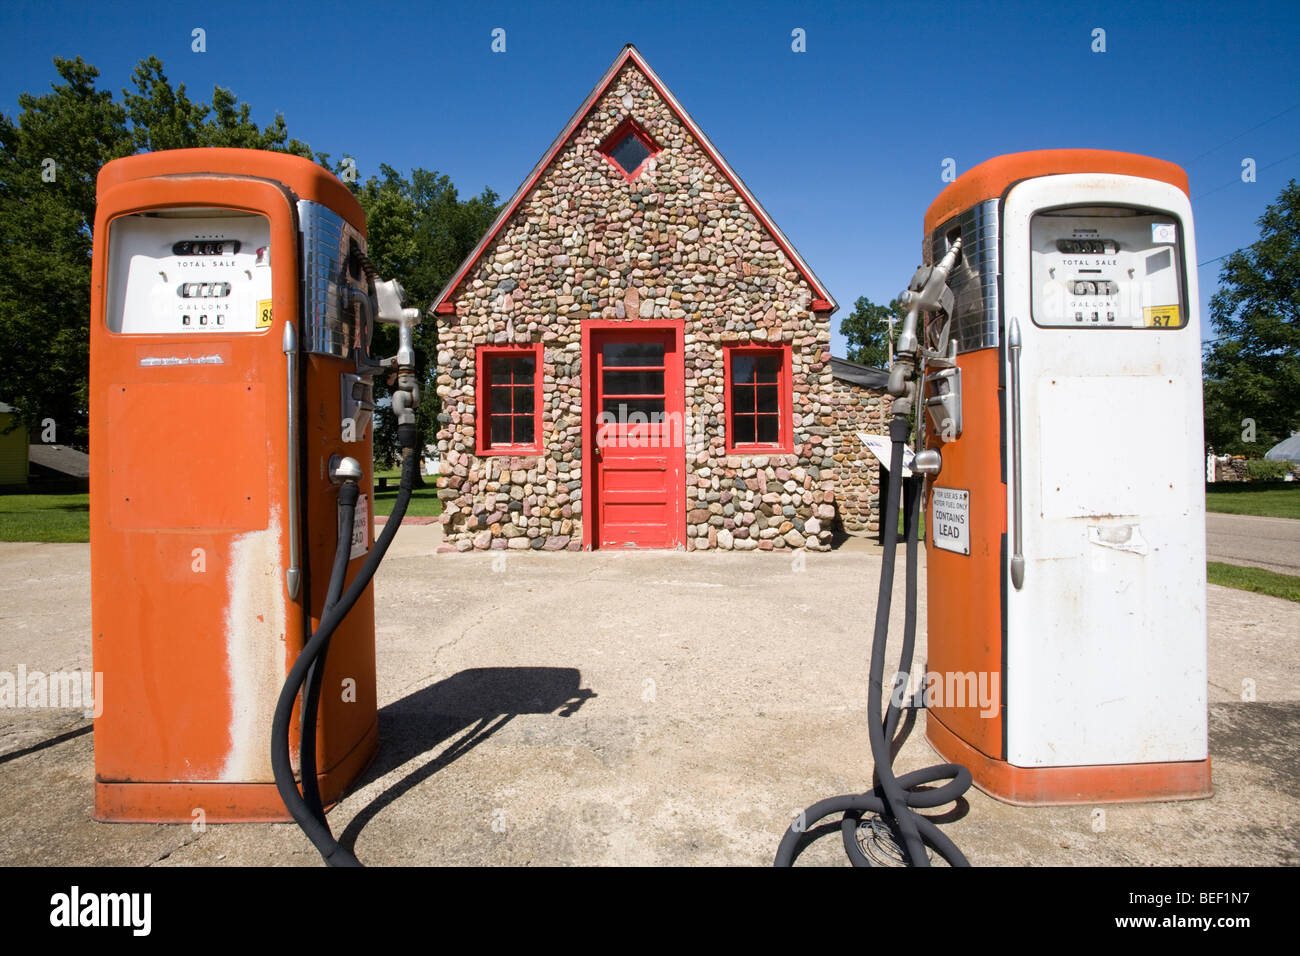 Une station de remplissage d'huile Mobil vintage construit à la main en pierre locale et préservés dans l'Iowa, Correctionville Banque D'Images